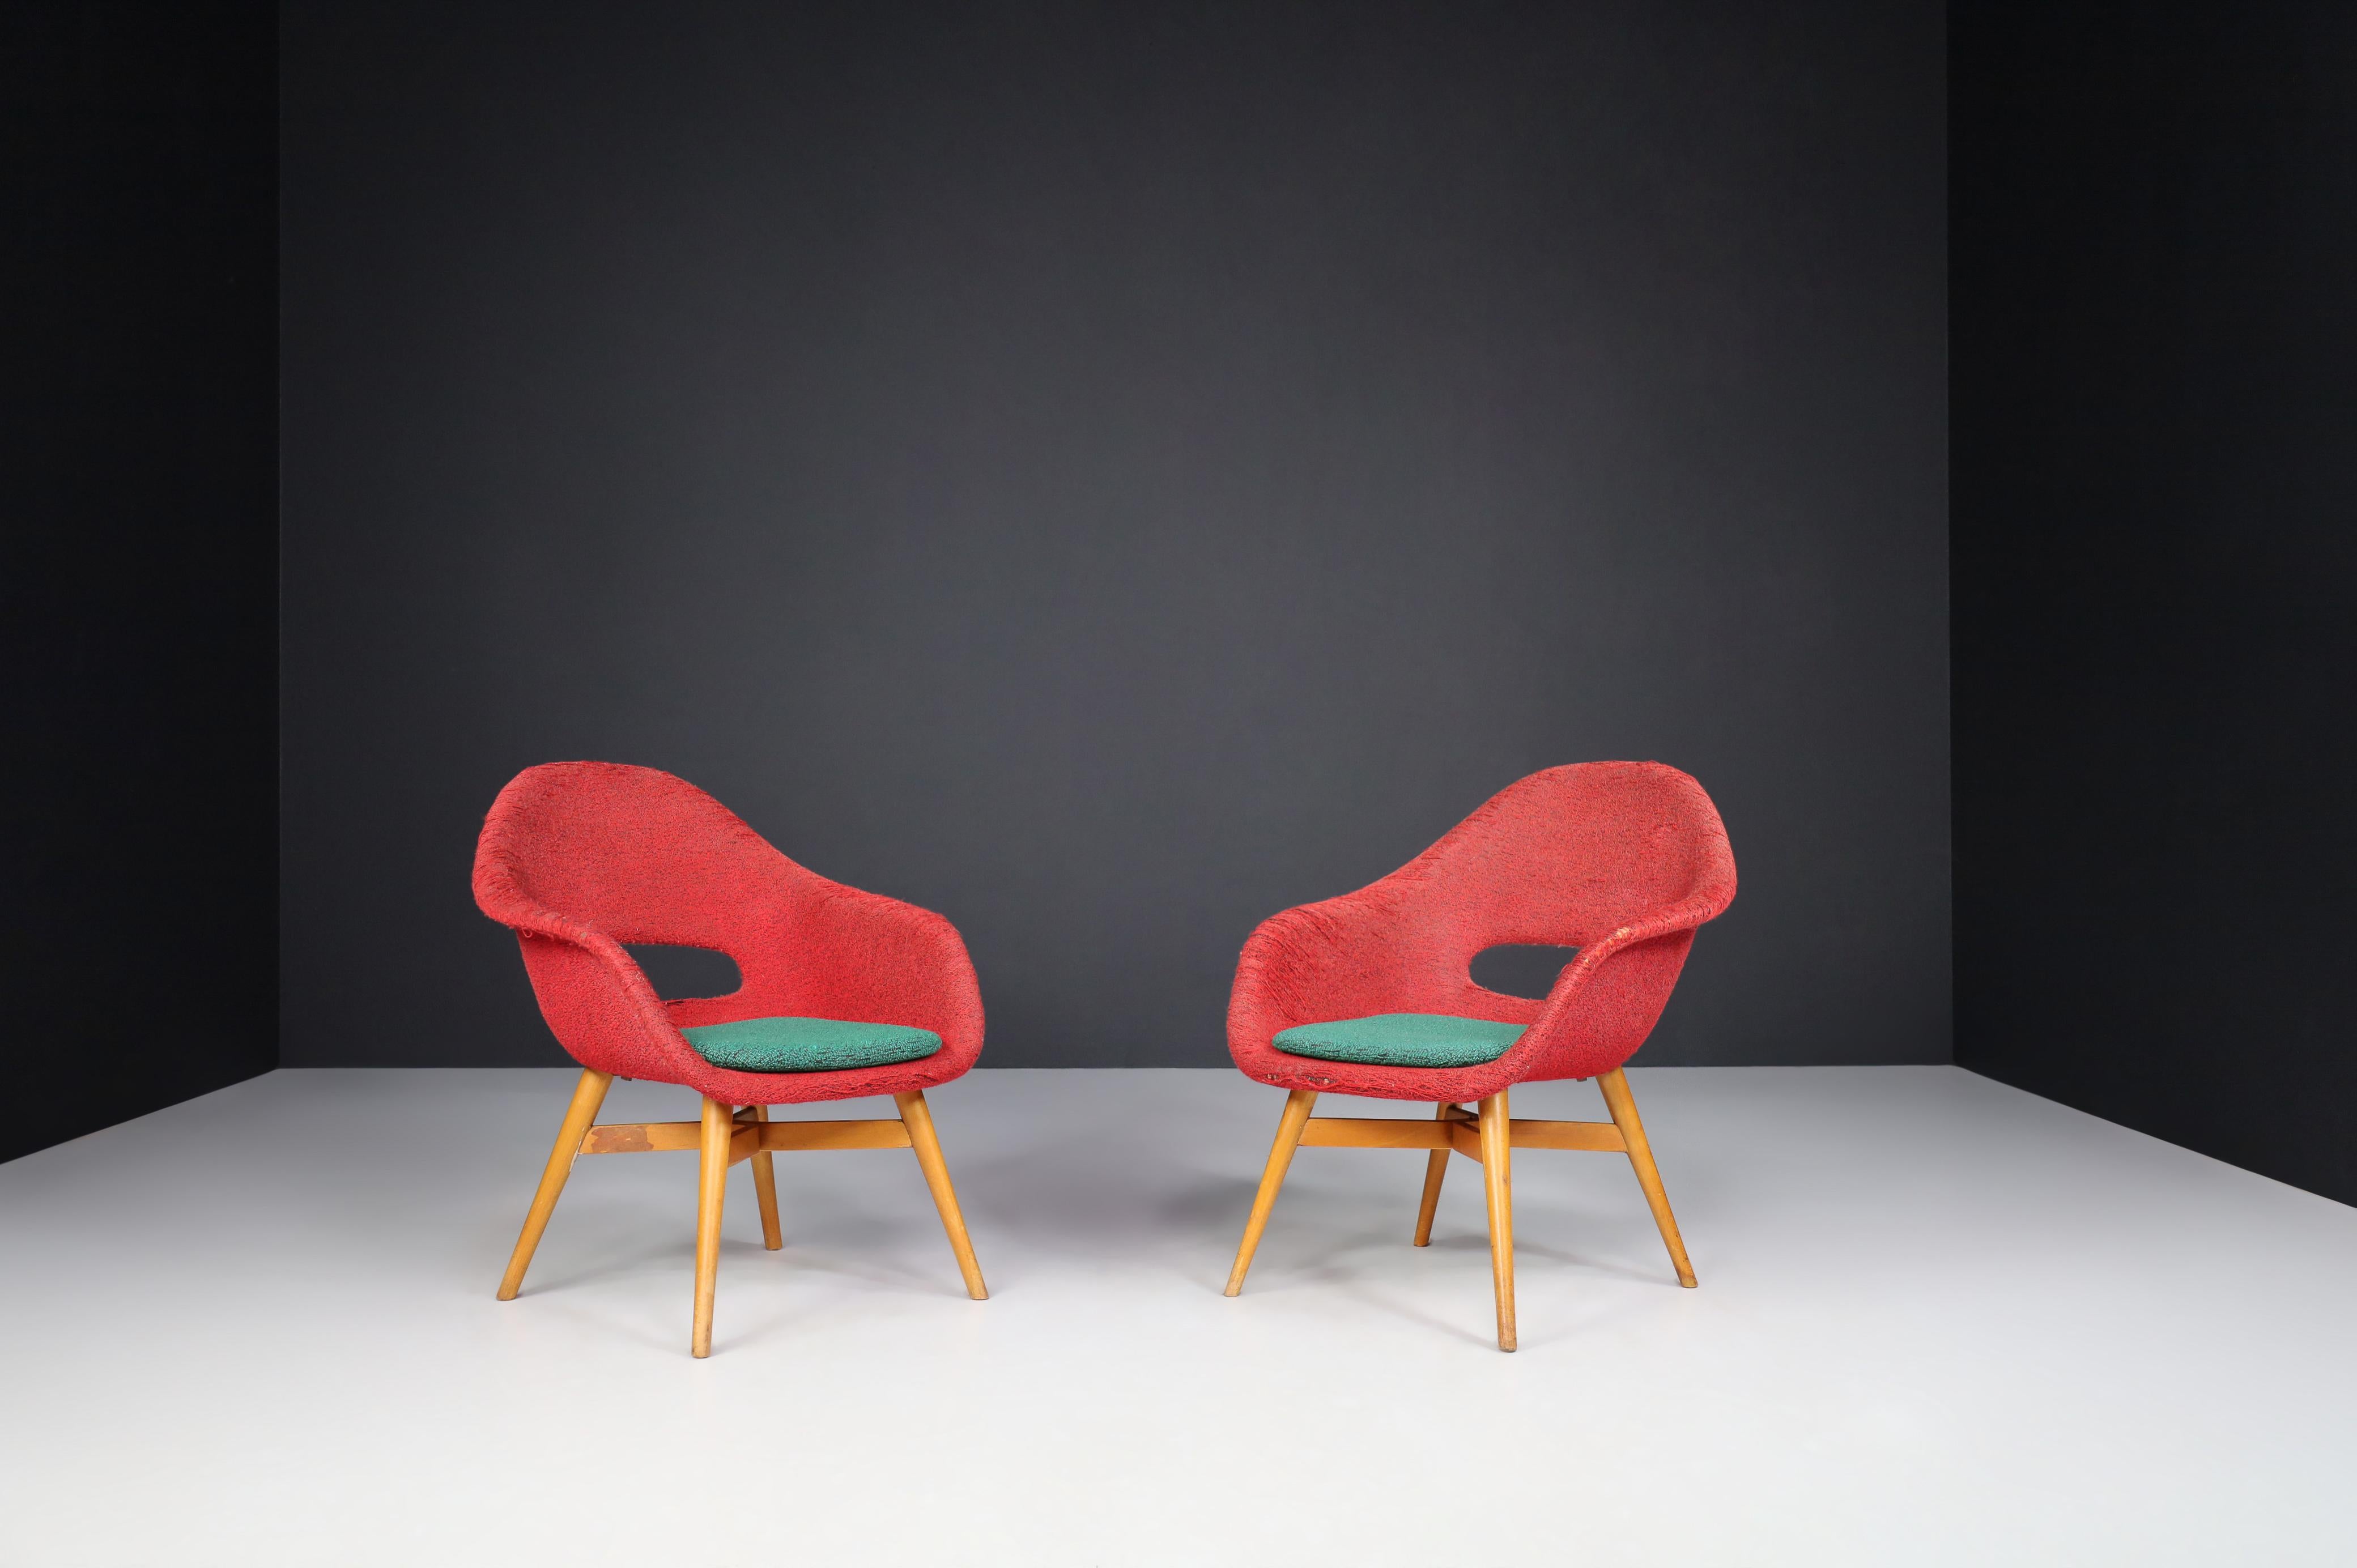 Fauteuils Miroslav Navratil en tissu d'origine 1960.

Charmant ensemble de deux fauteuils de Miroslav Navratil, fabriqués en République tchèque par Cesky Nabytek vers 1960. Ces chaises ont une base en contreplaqué de hêtre et une coque en fibre de